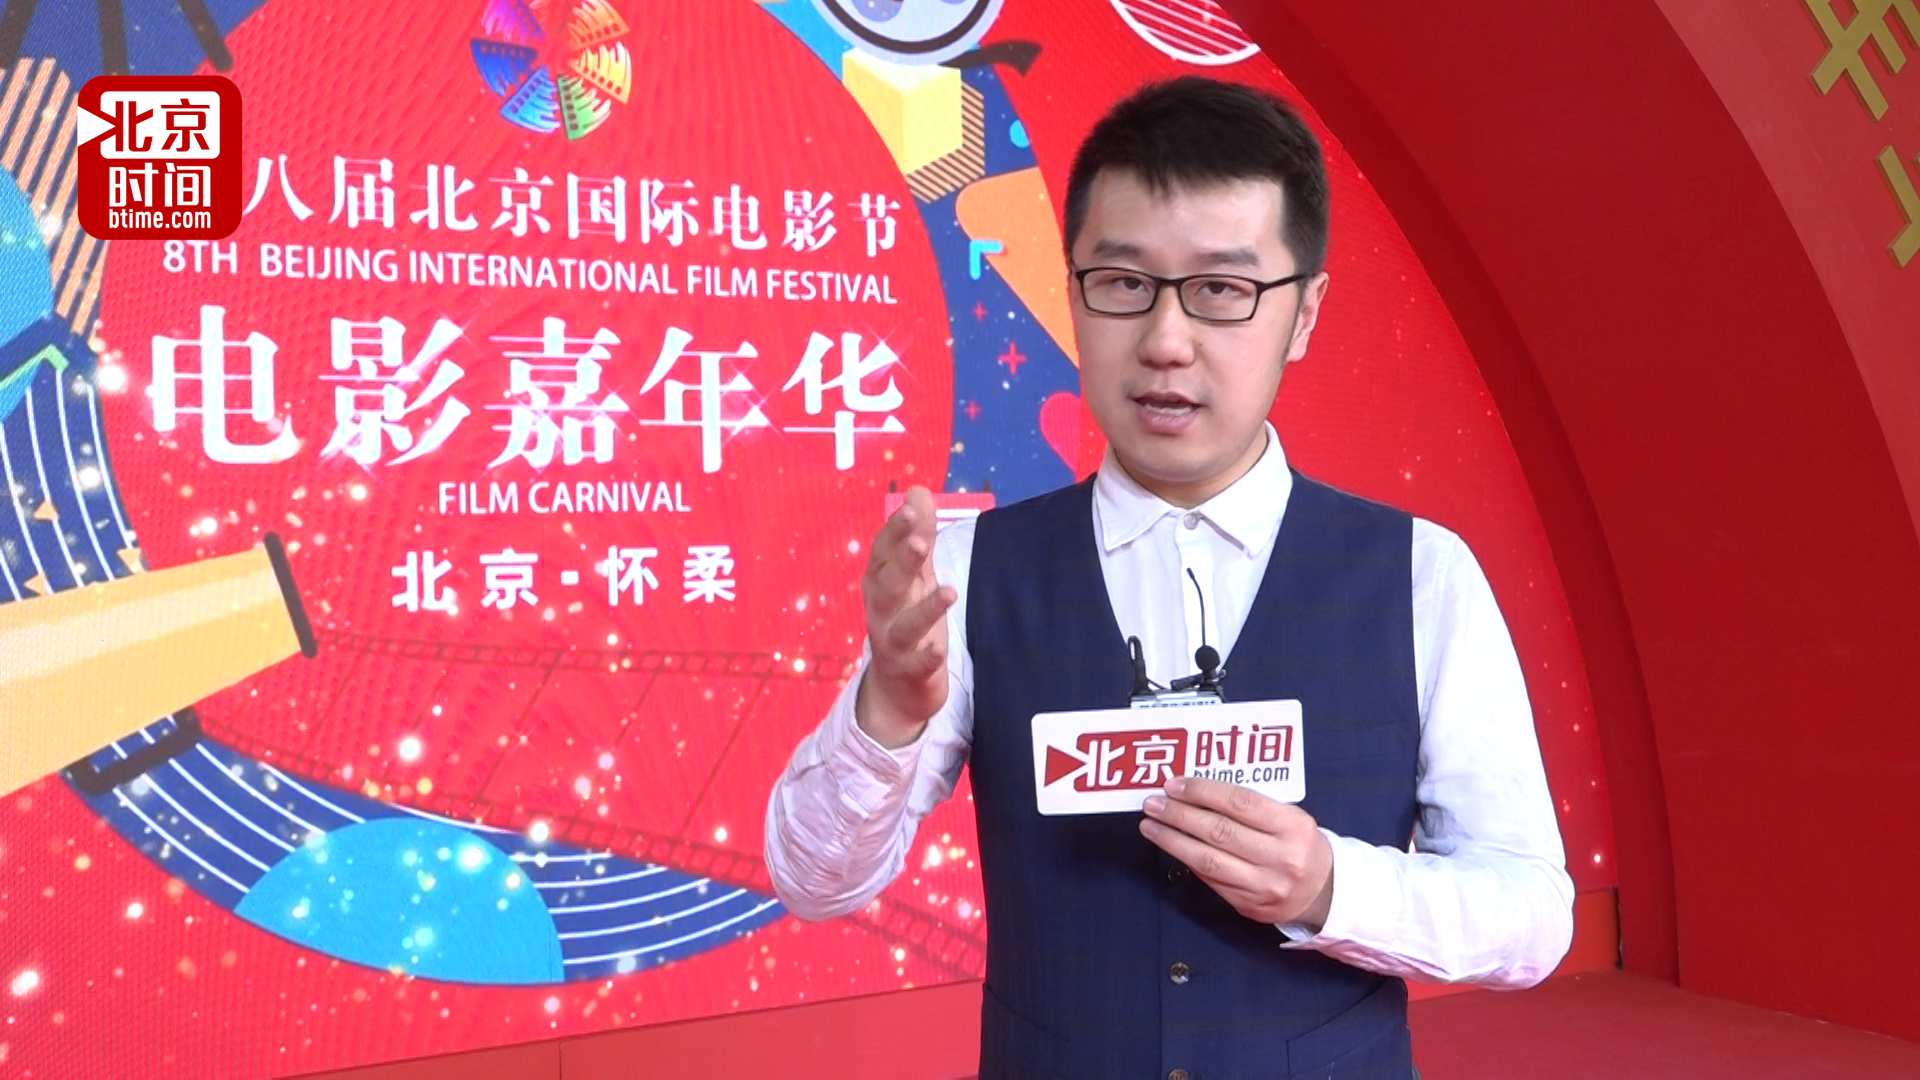 电影节嘉年华活动即将开启 北京时间主持人带您现场体验